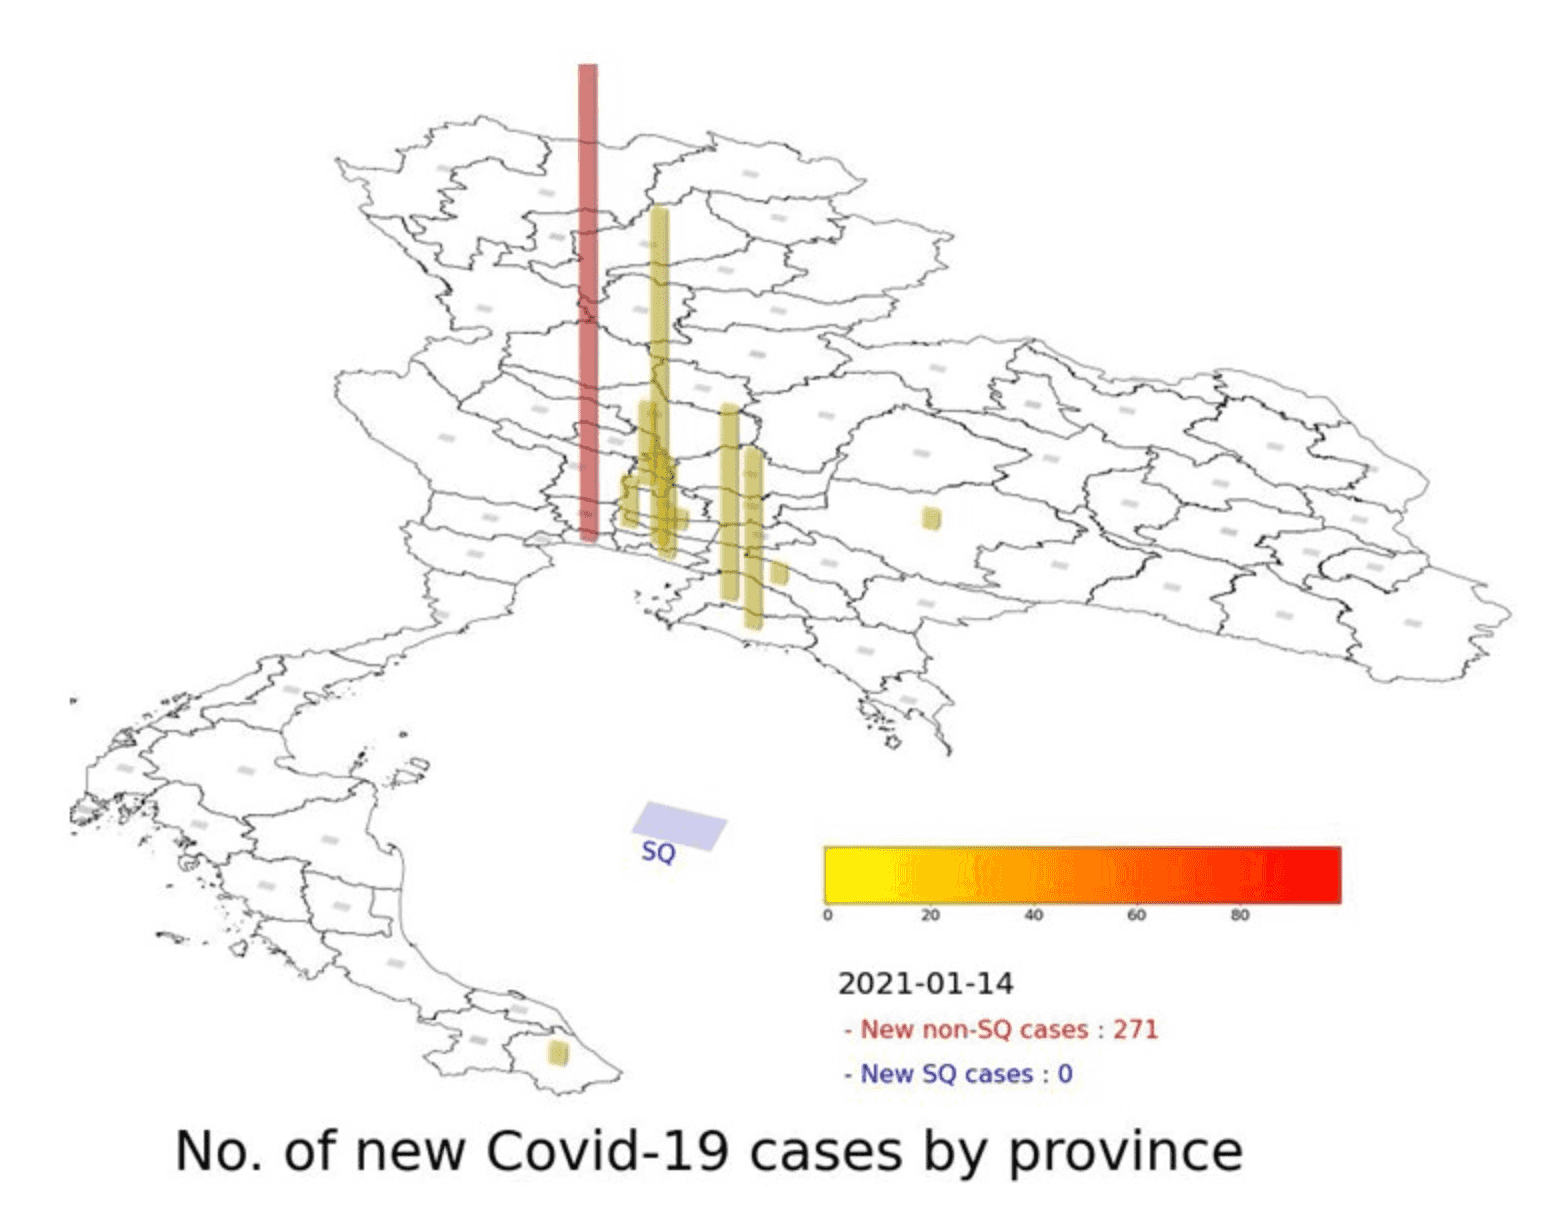 ข้อมูลจำนวนผู้ติดเชื้อโควิด-19 ระลอกใหม่รายวันในจังหวัดต่าง ๆ